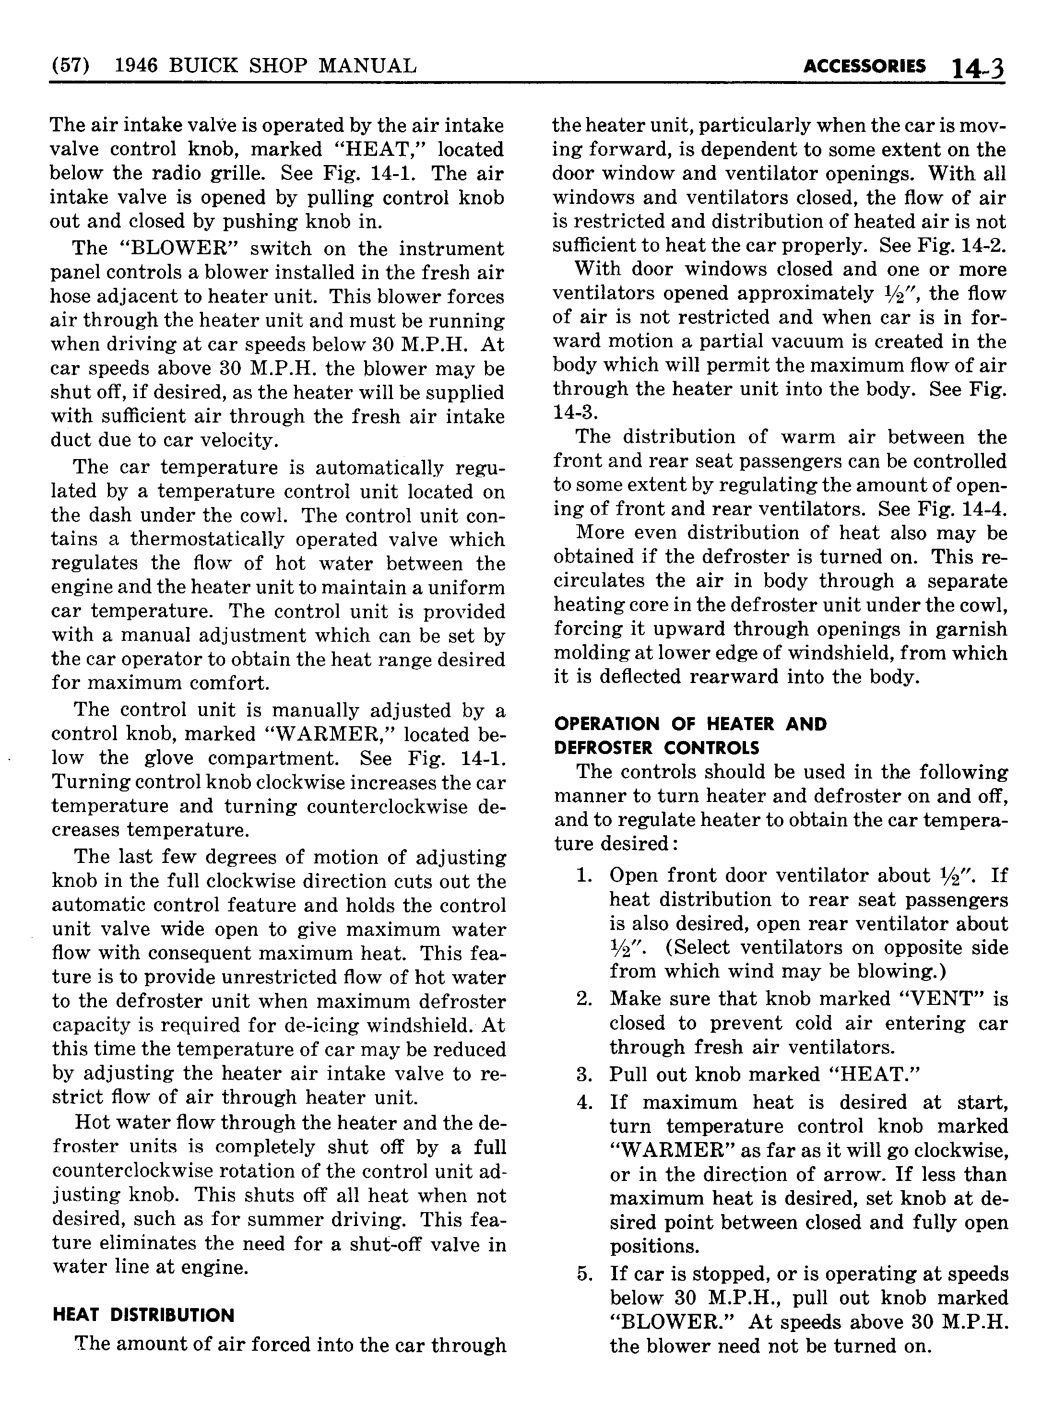 n_13 1946 Buick Shop Manual - Accessories-003-003.jpg